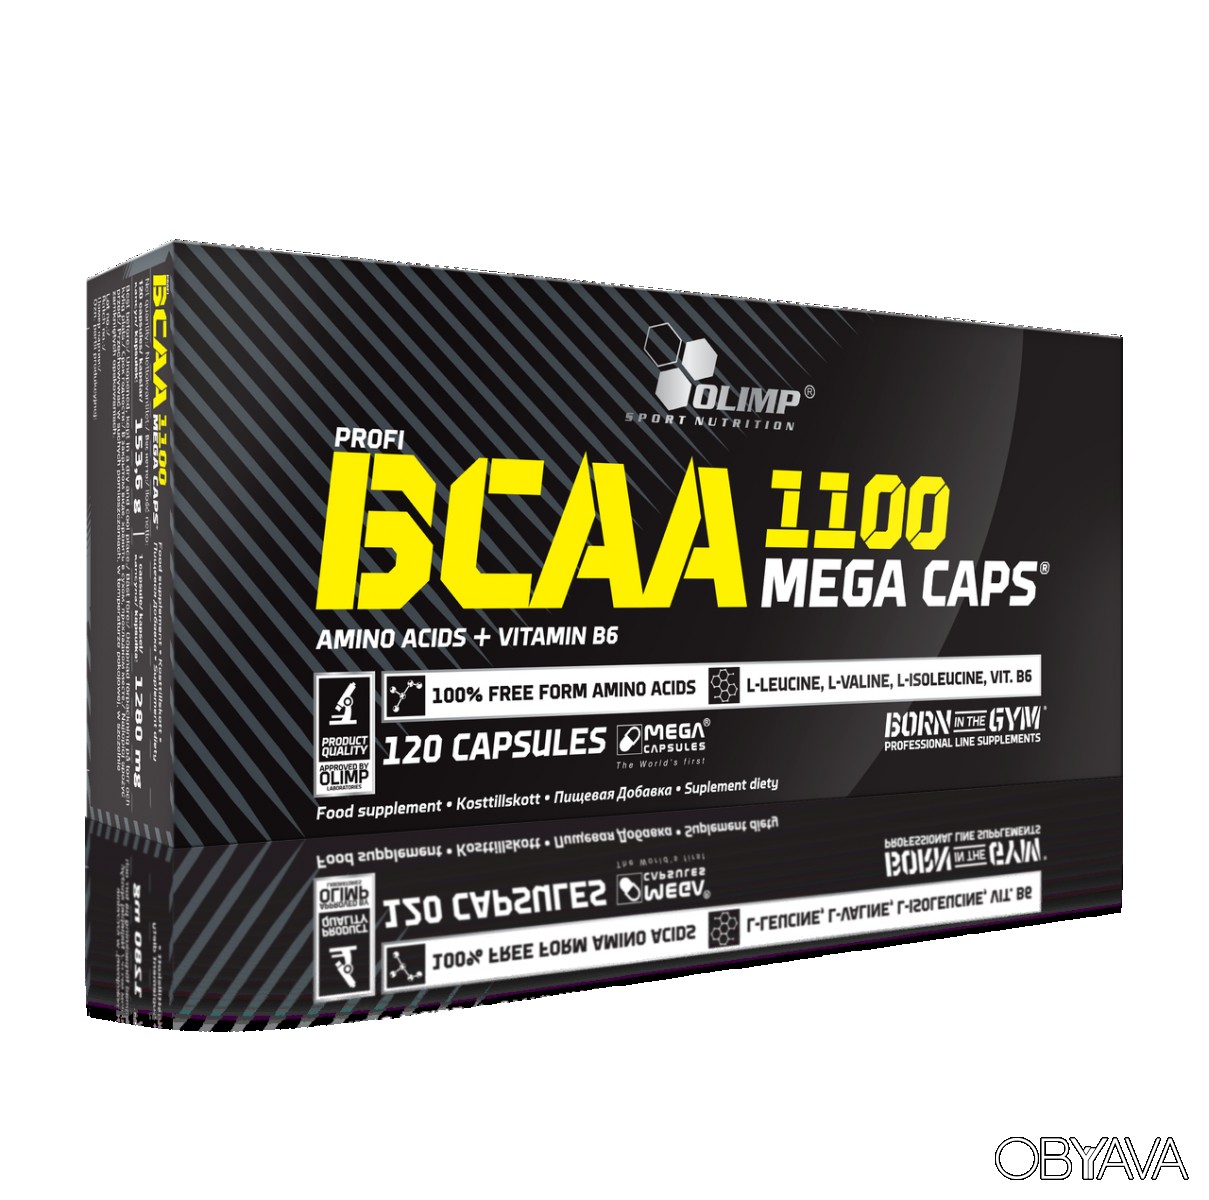 BCAA Mega Caps 1100 представляет собой комплекс с высокой концентрацией незаменимых аминокислот Добавка производится компанией Olimp и выпускается в капсулах